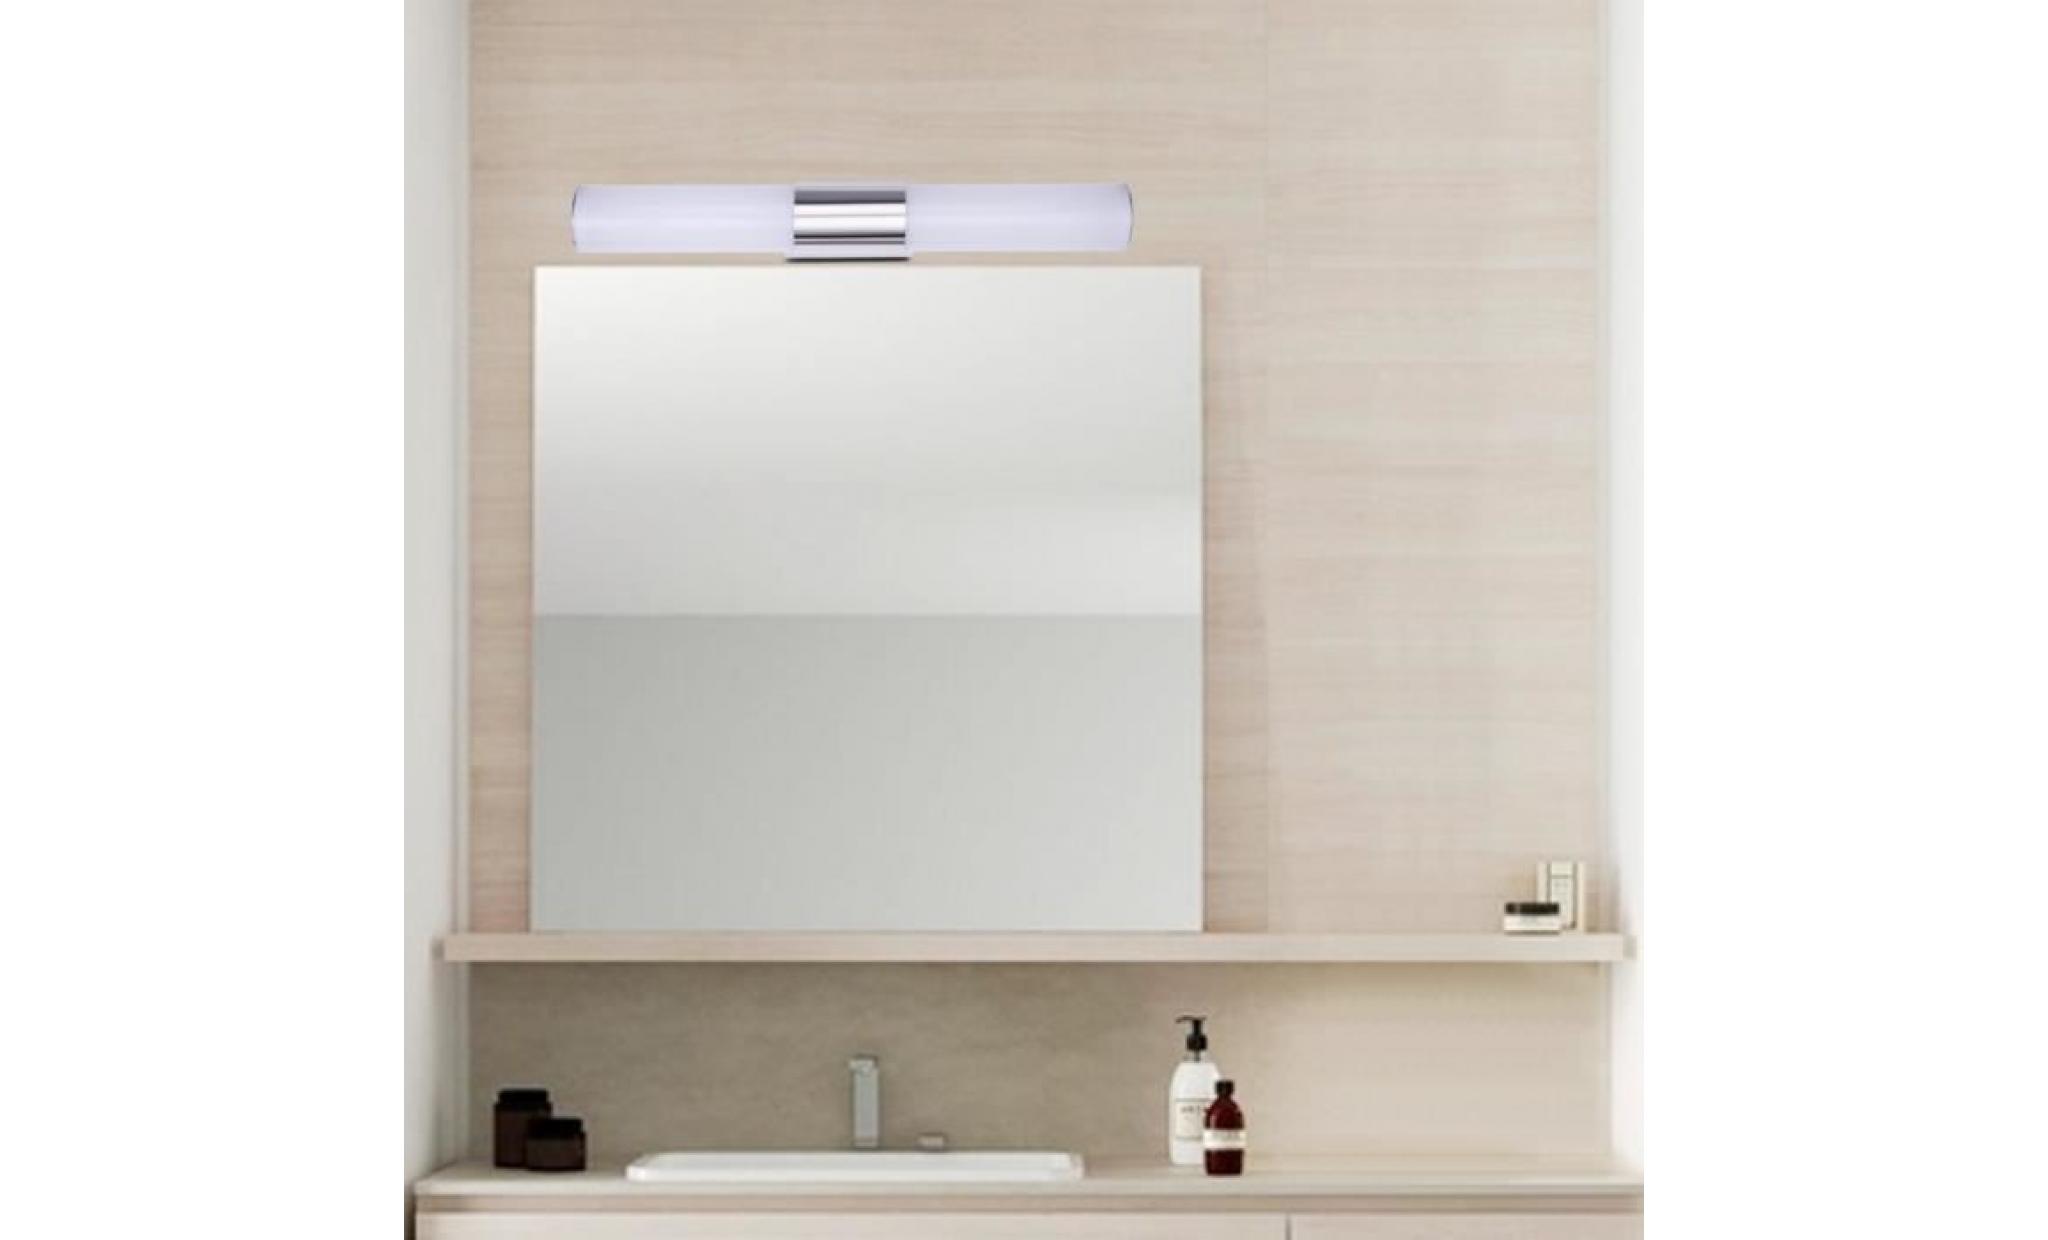 40cm applique miroir de salle de bain led 8w blanc froid Étanche acrylique lampe murale intérieur design moderne pas cher